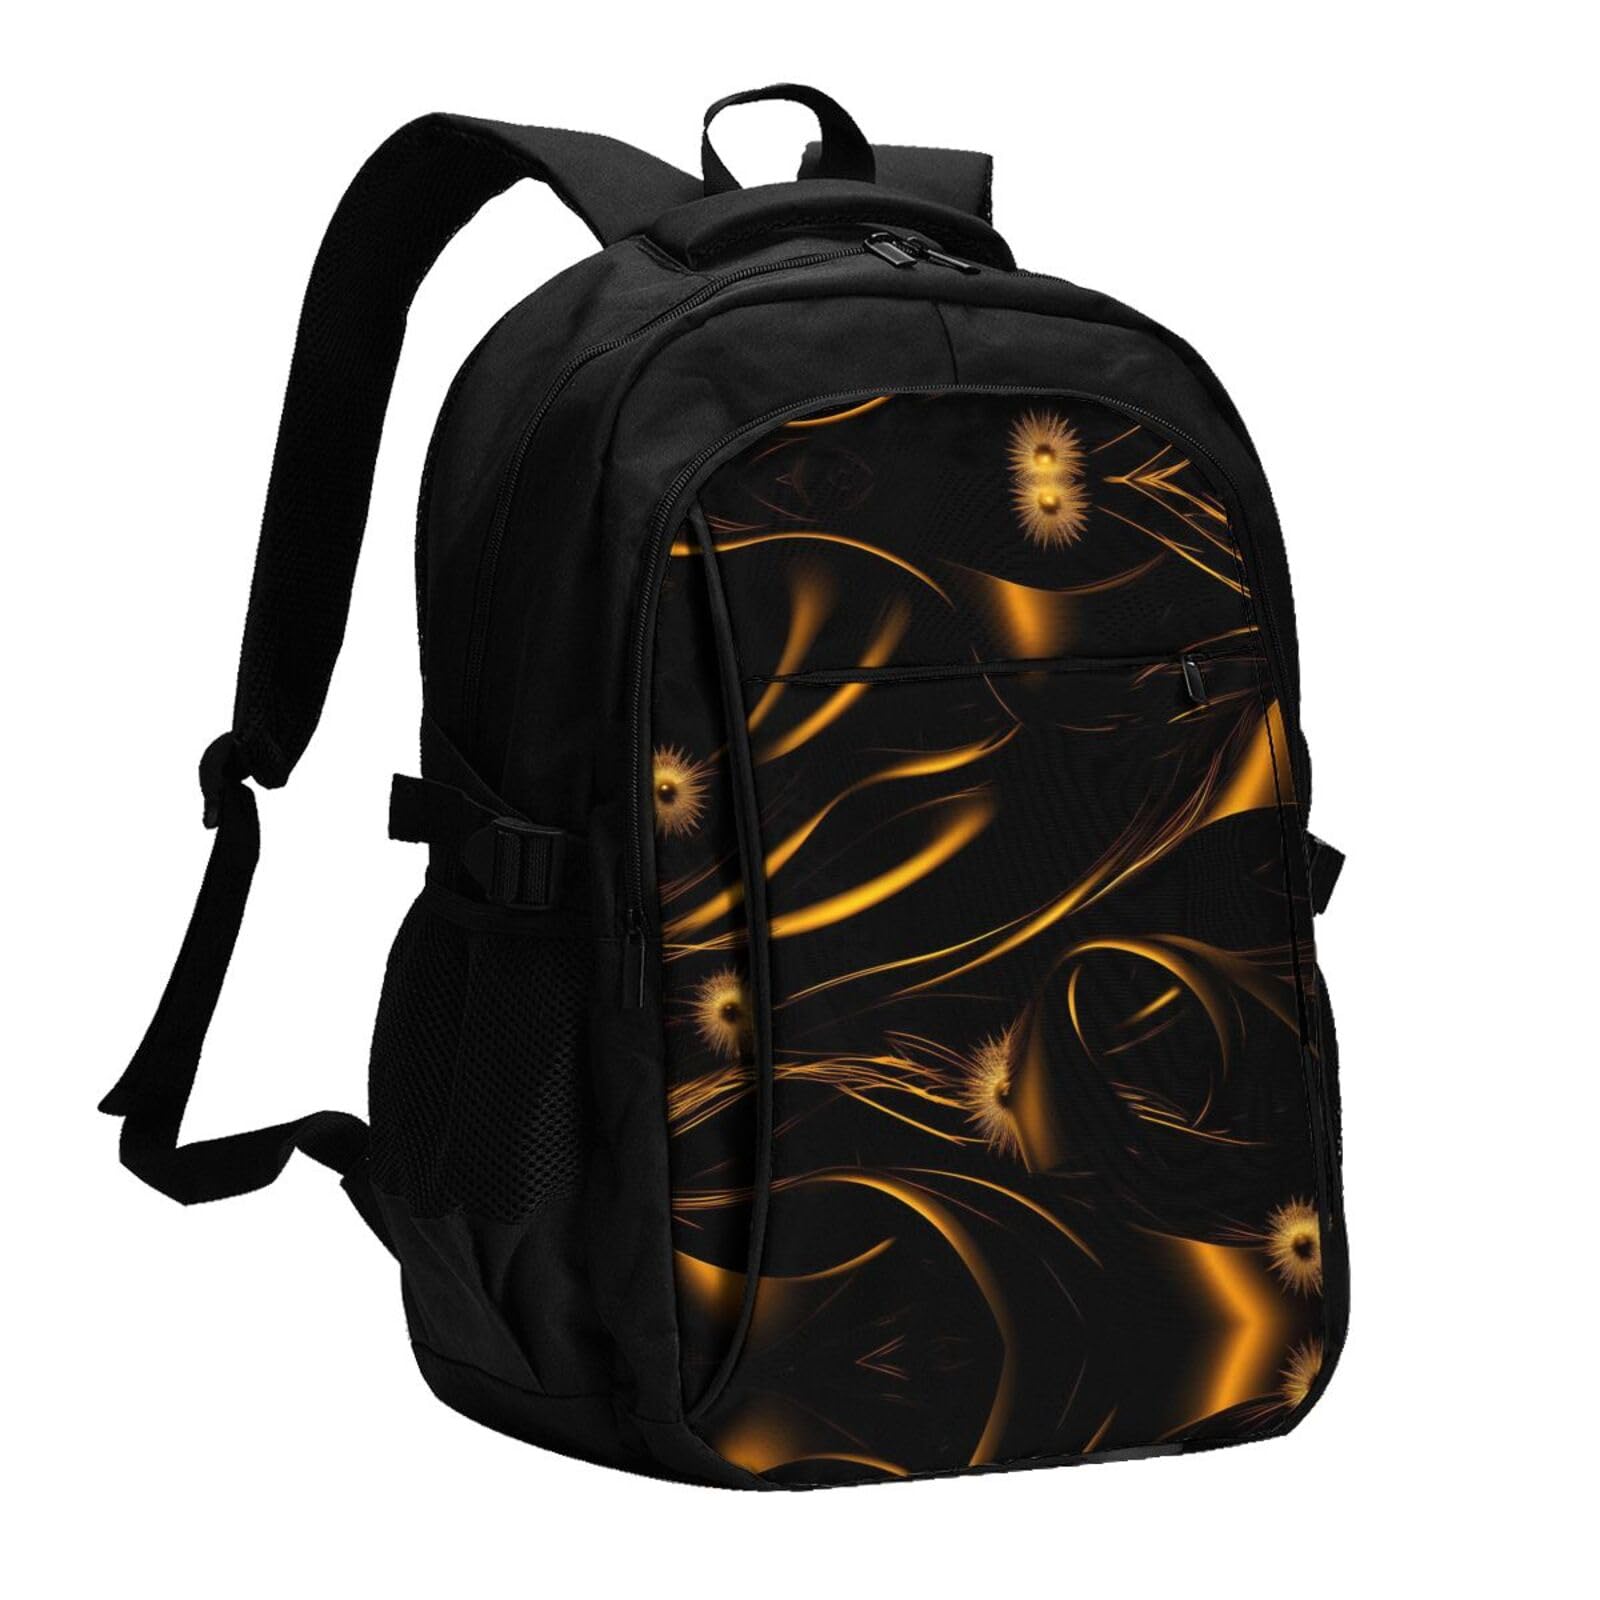 送料無料OdDdot Black And Gold Background Travel Laptop Usb Backpack Water Resistant College Bag Computer Bag Fits 15.6 I